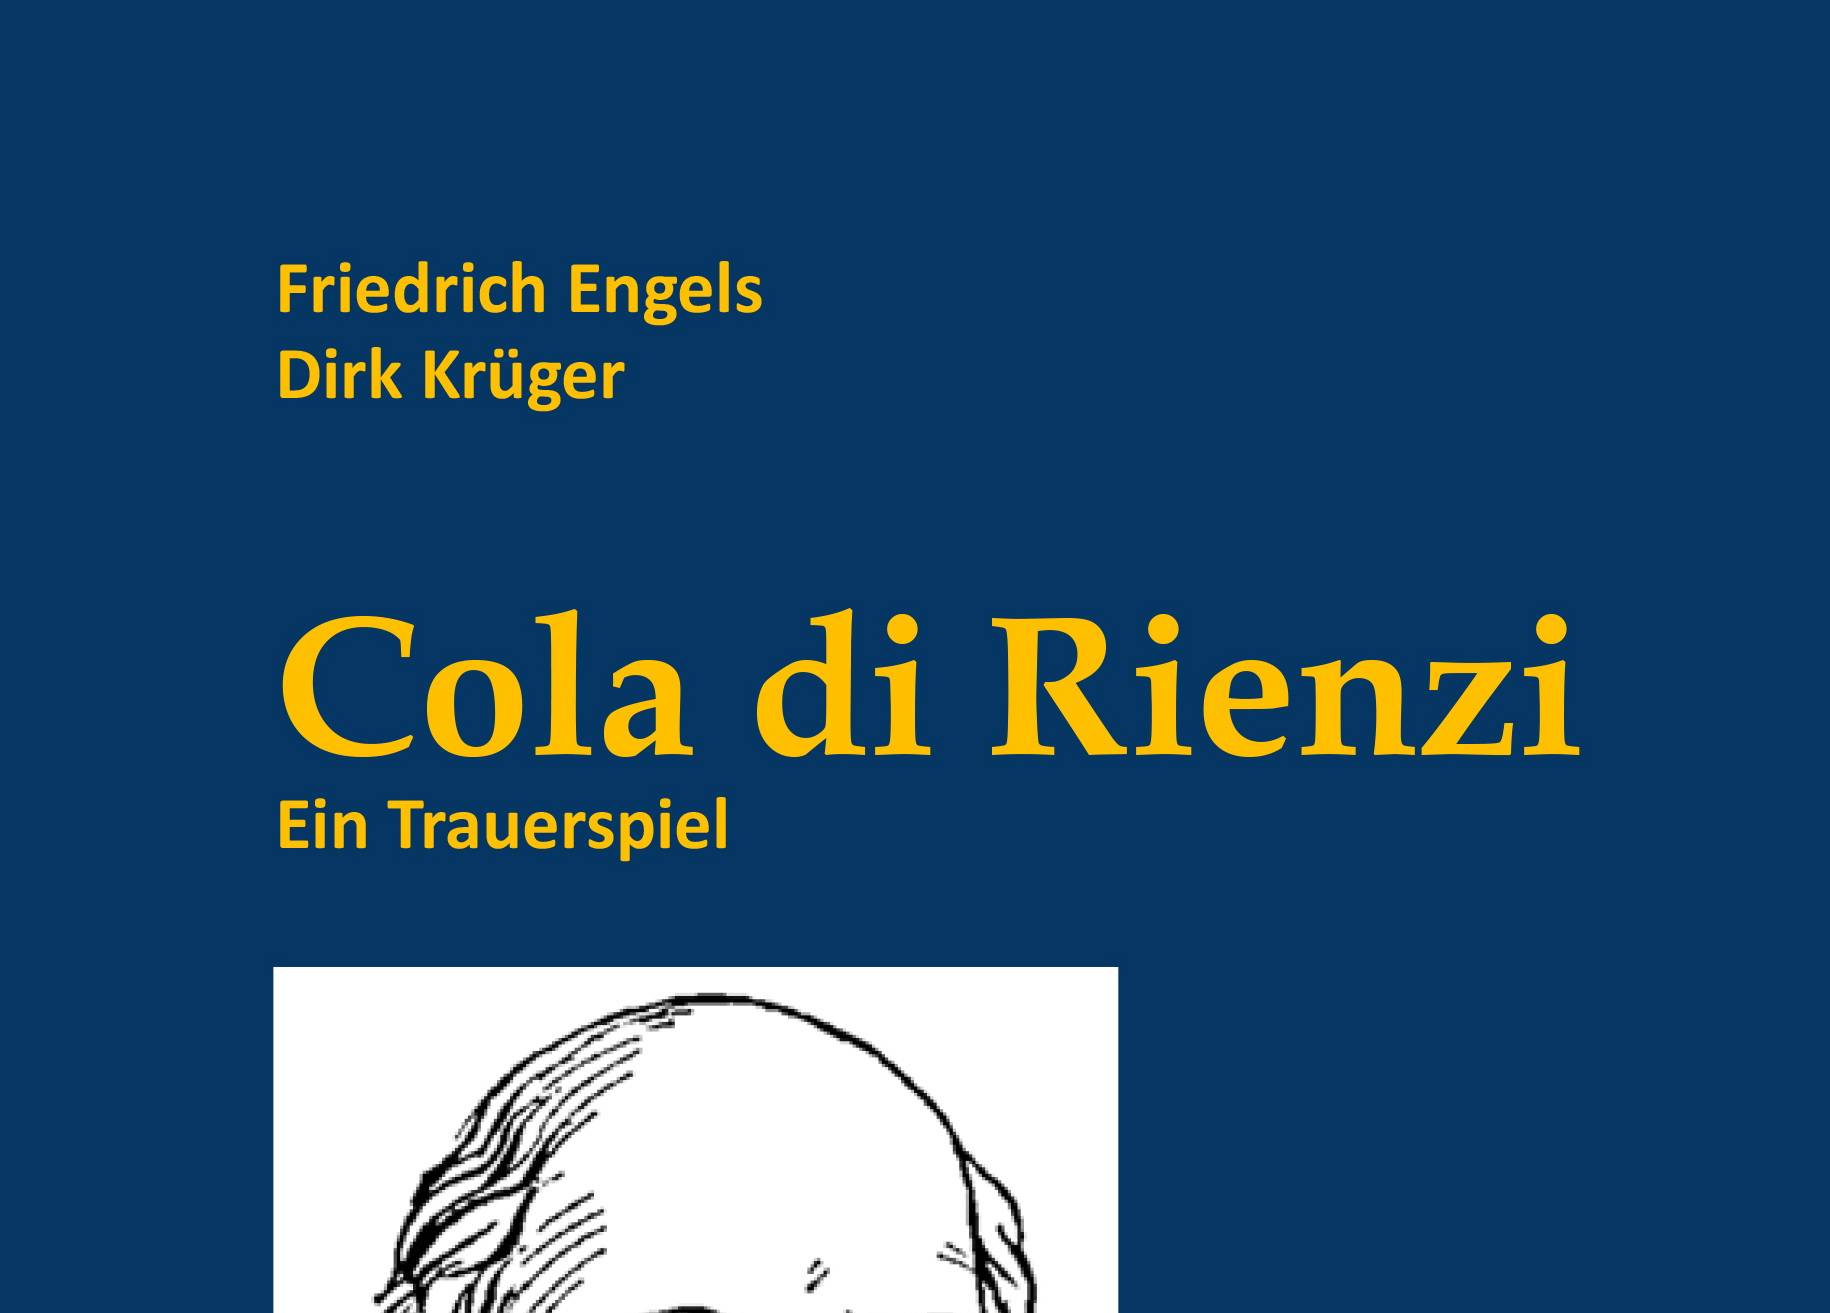  "Cola di Rienzi. Ein Trauerspiel“ von Friedrich Engels und Dirk Krüger ist im Wuppertaler Nordpark-Verlag erschienen und kostet zehn Euro. 